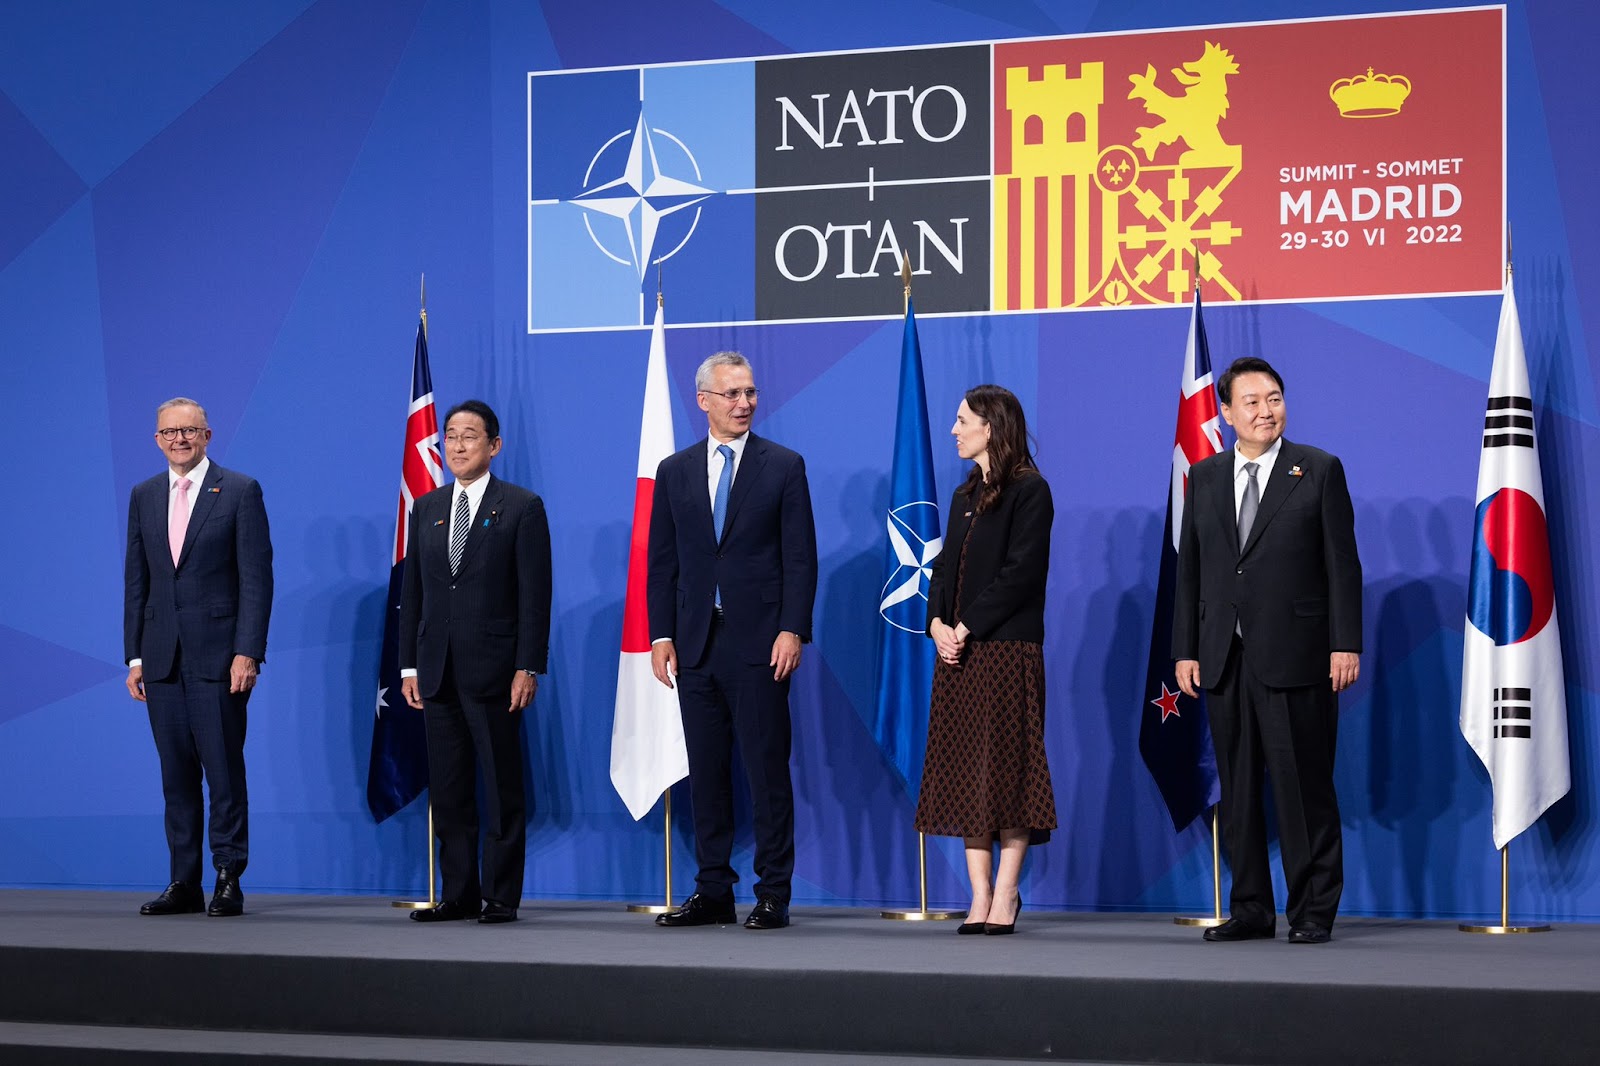 NATOサミット2022に参加した首脳が五人だけ壇上に立っている